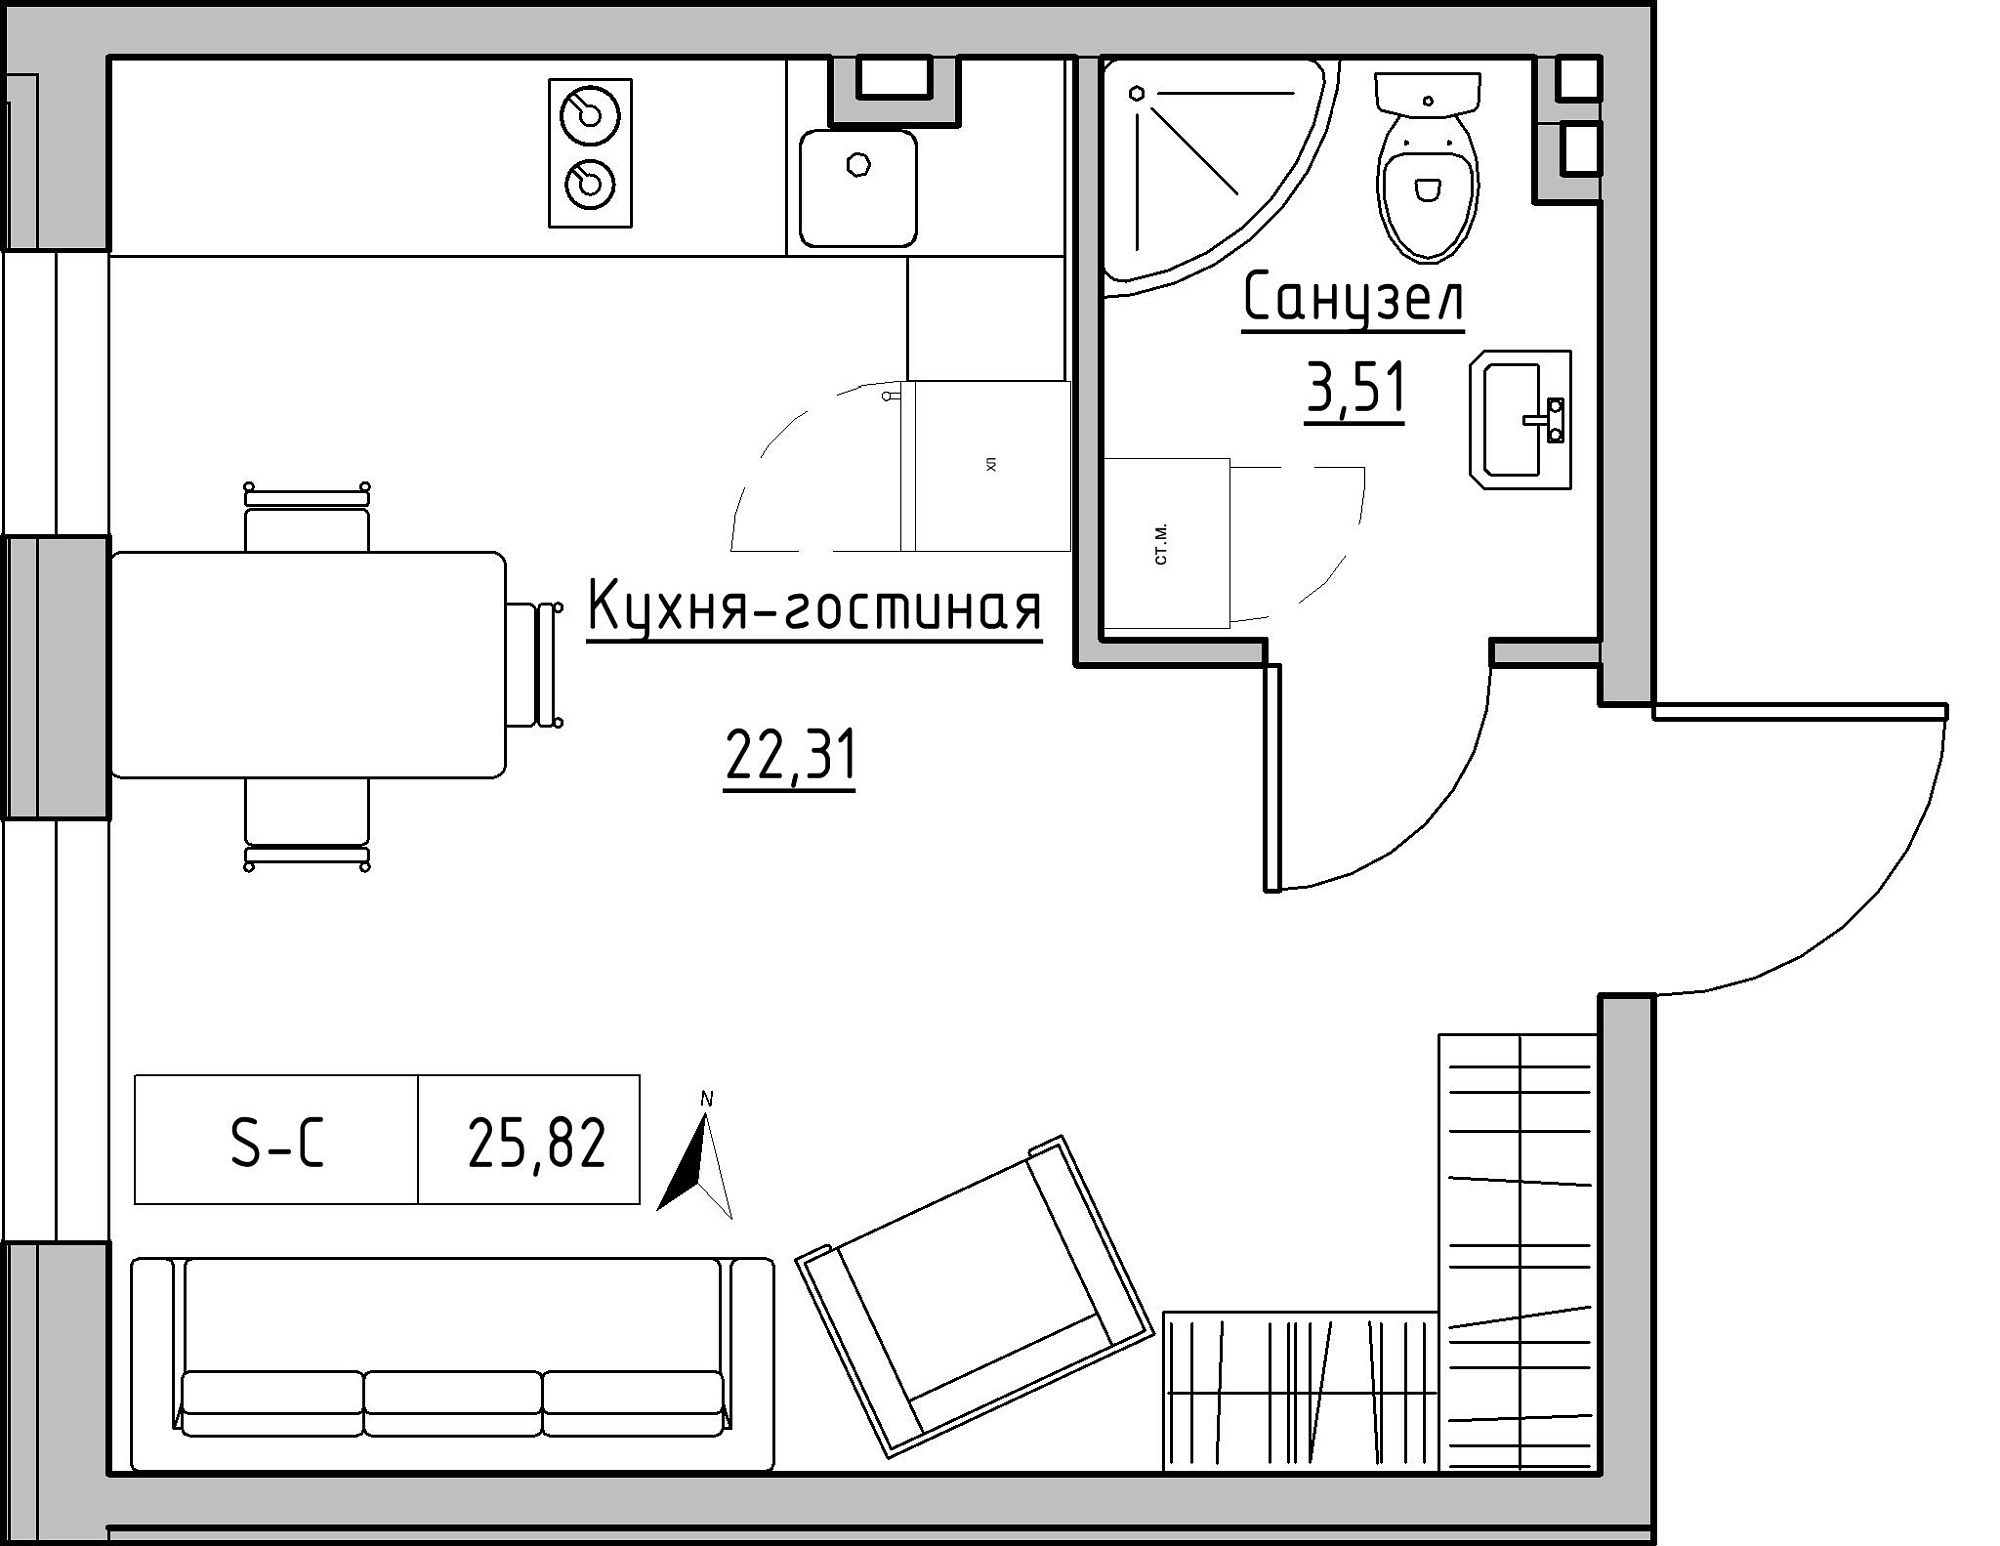 Планування Smart-квартира площею 25.82м2, KS-024-01/0009.